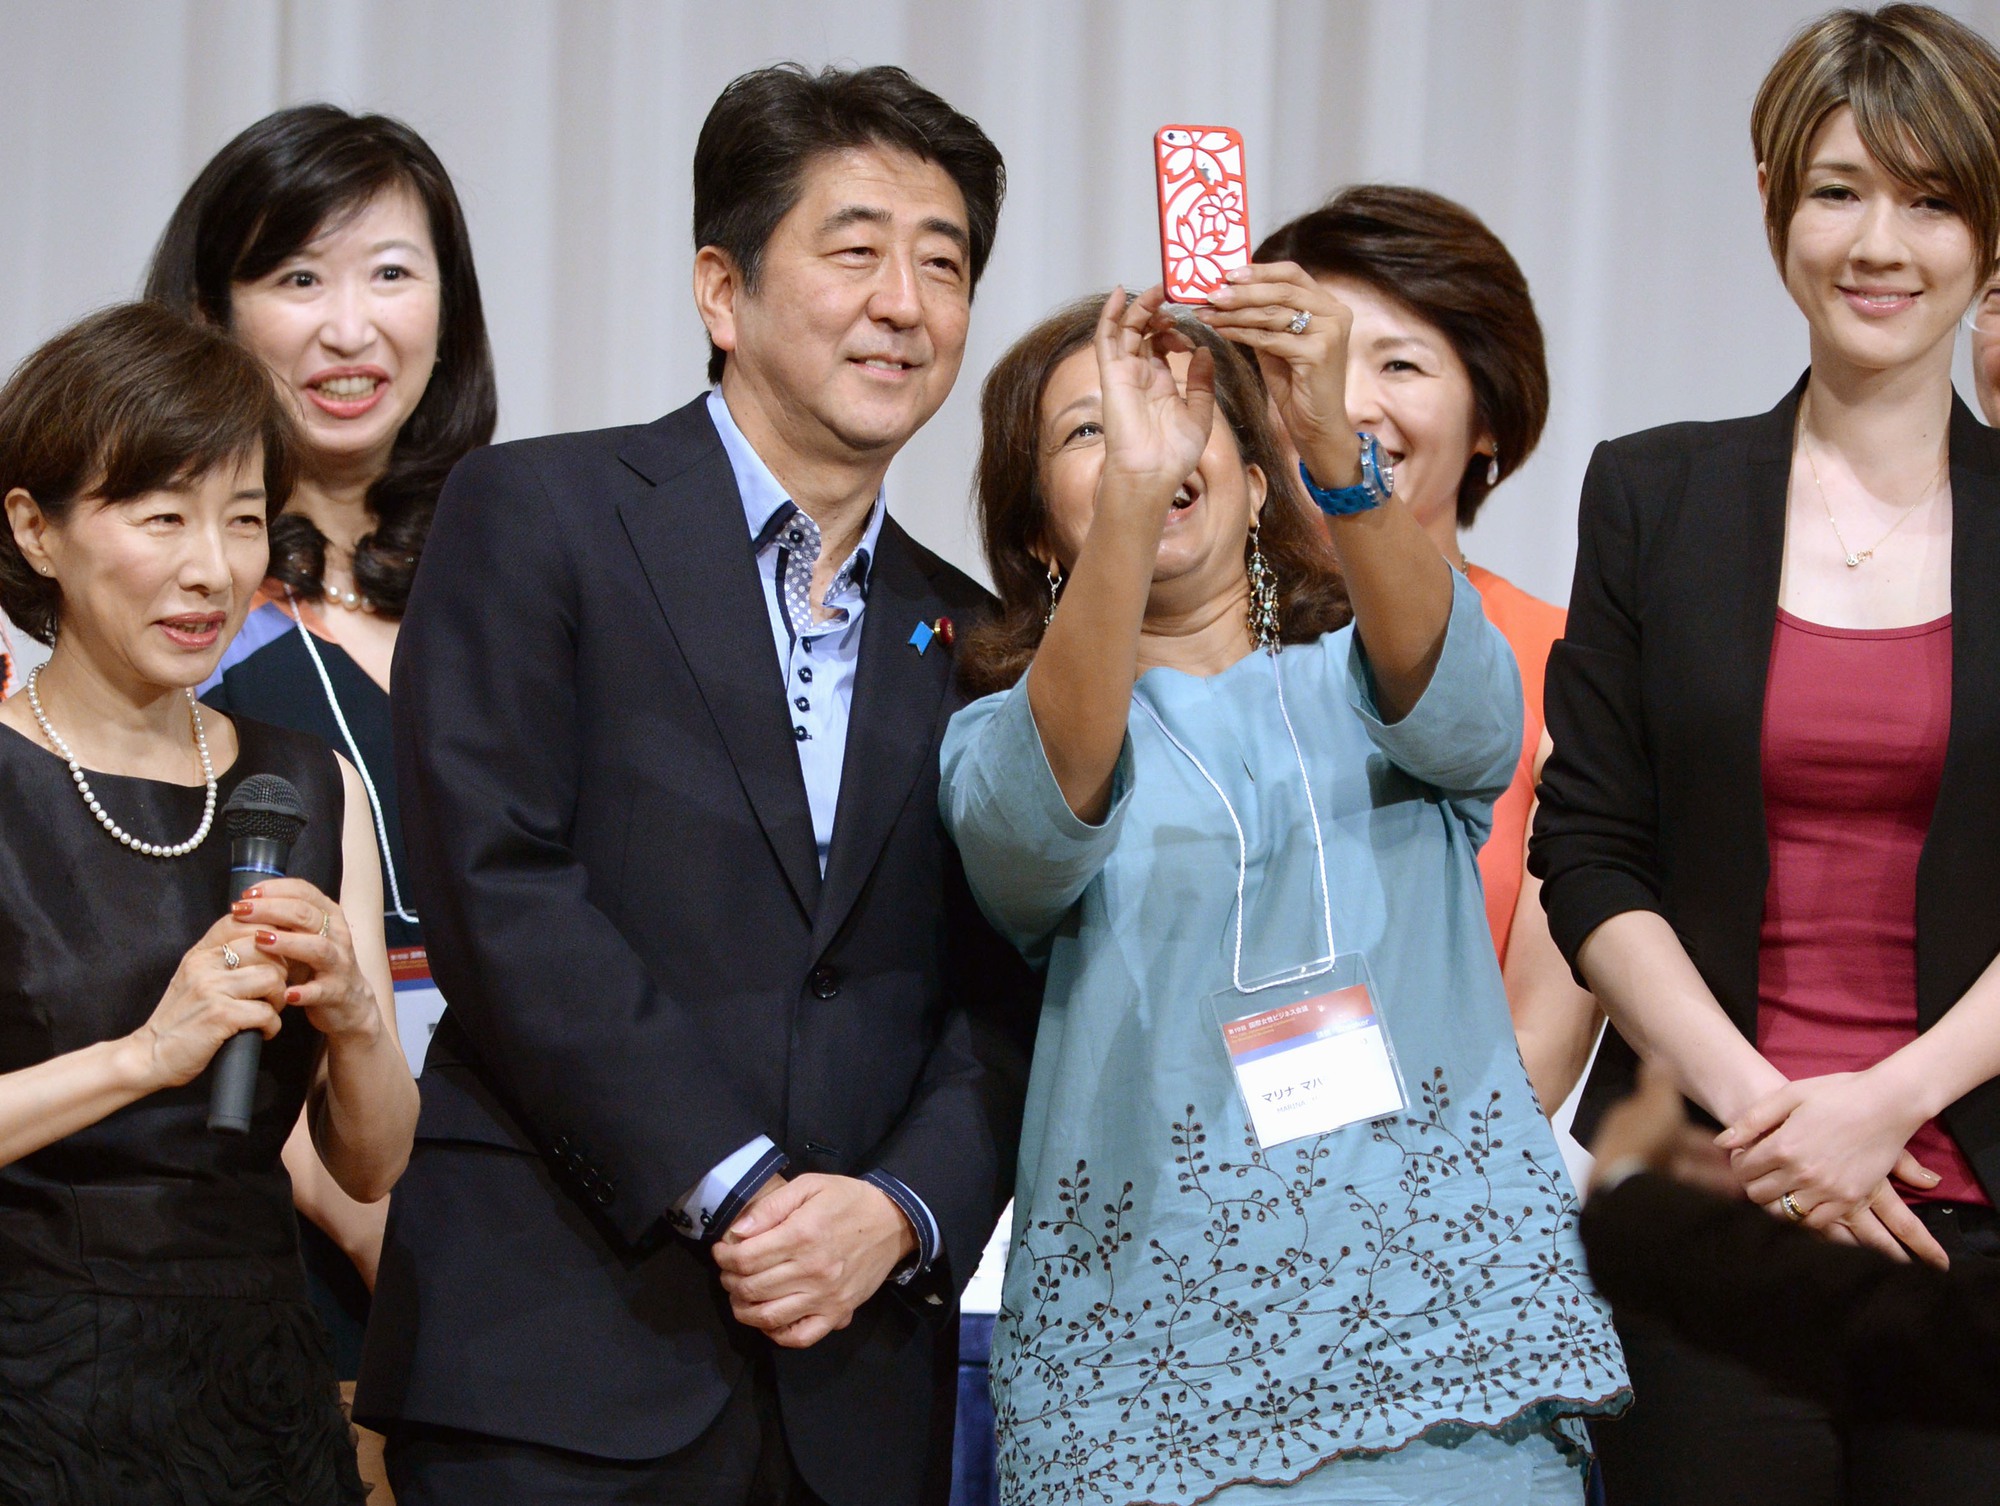 Gia đình của cựu Thủ tướng Nhật Abe Shinzo: Giàu truyền thống, 3 đời làm chính trị, chỉ có một điều đáng tiếc - Ảnh 1.